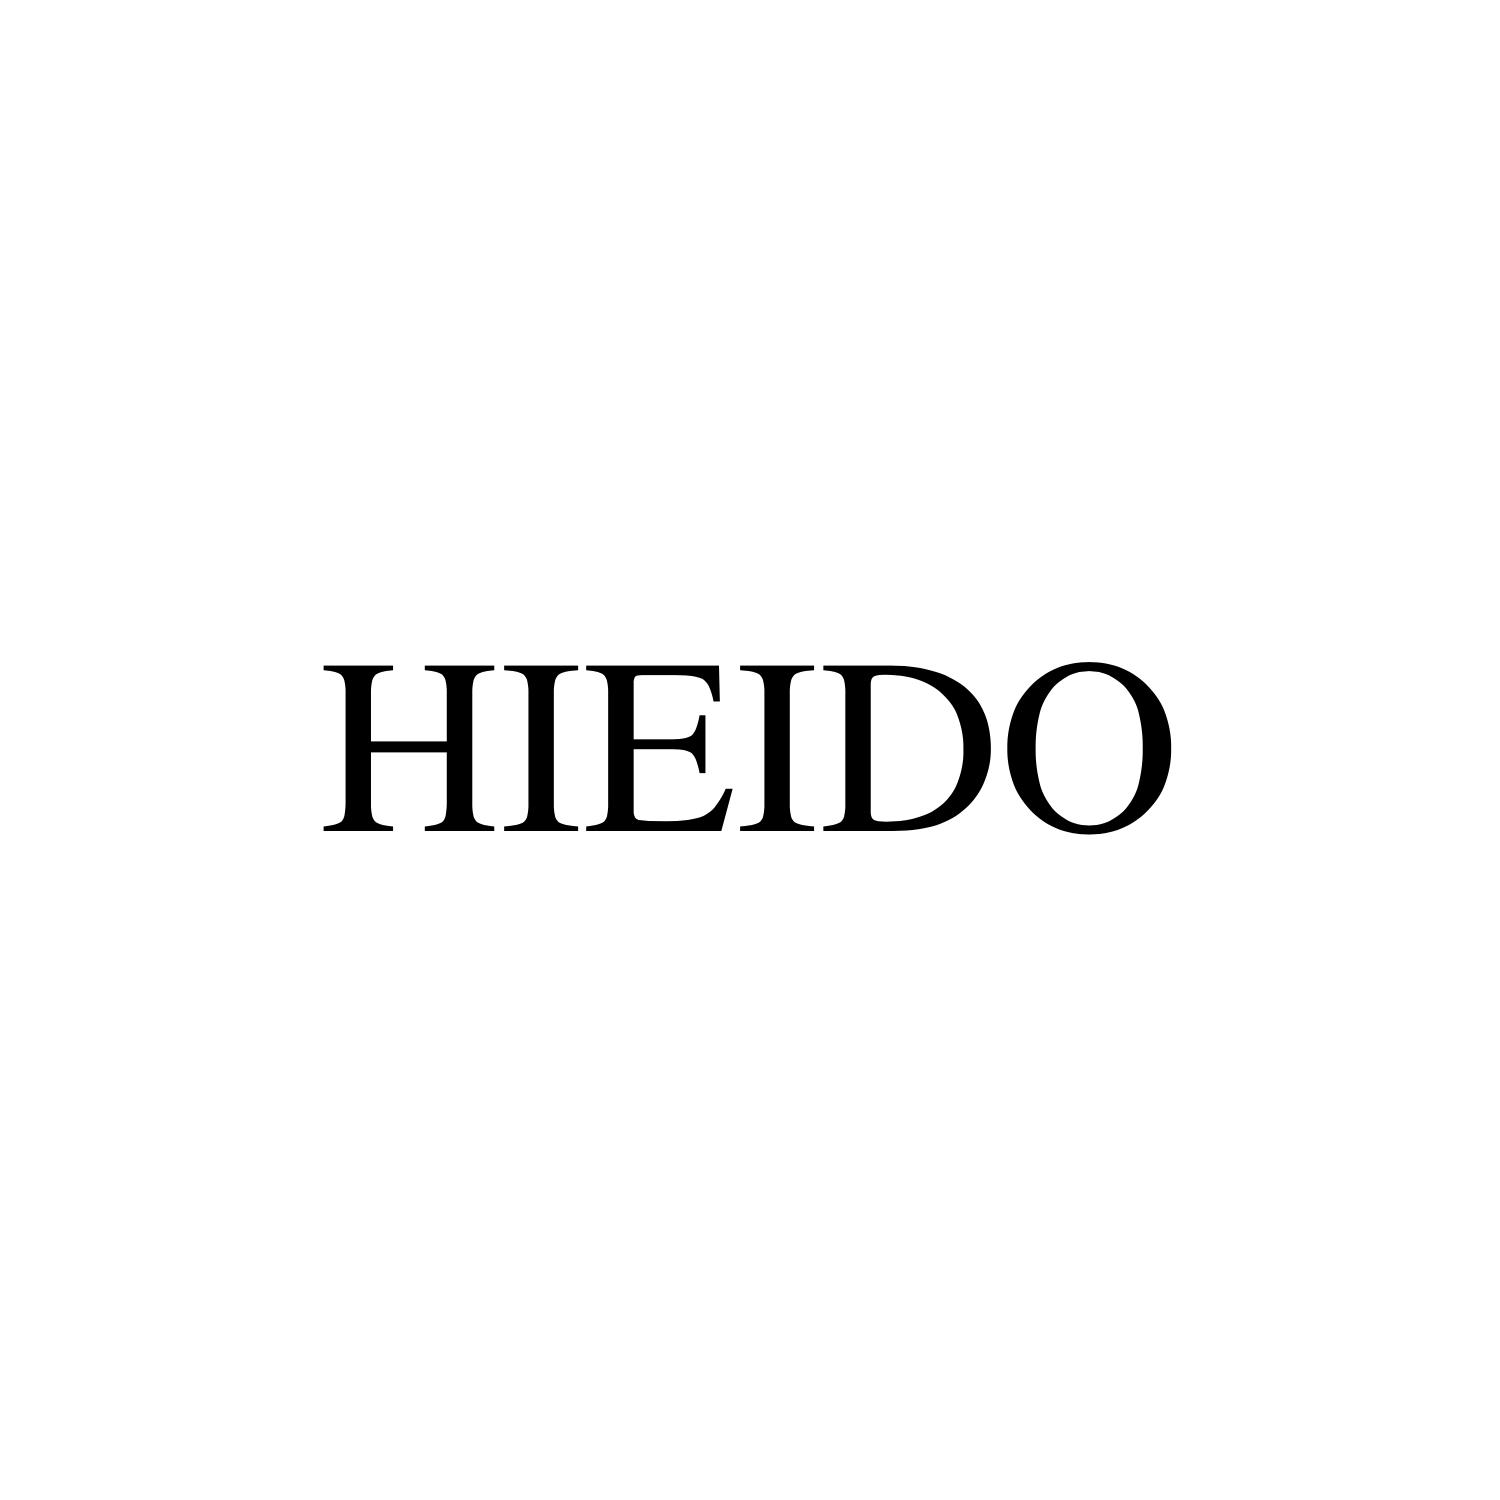 商标文字hieido商标注册号 42464713,商标申请人永康市笙笙化妆品商行